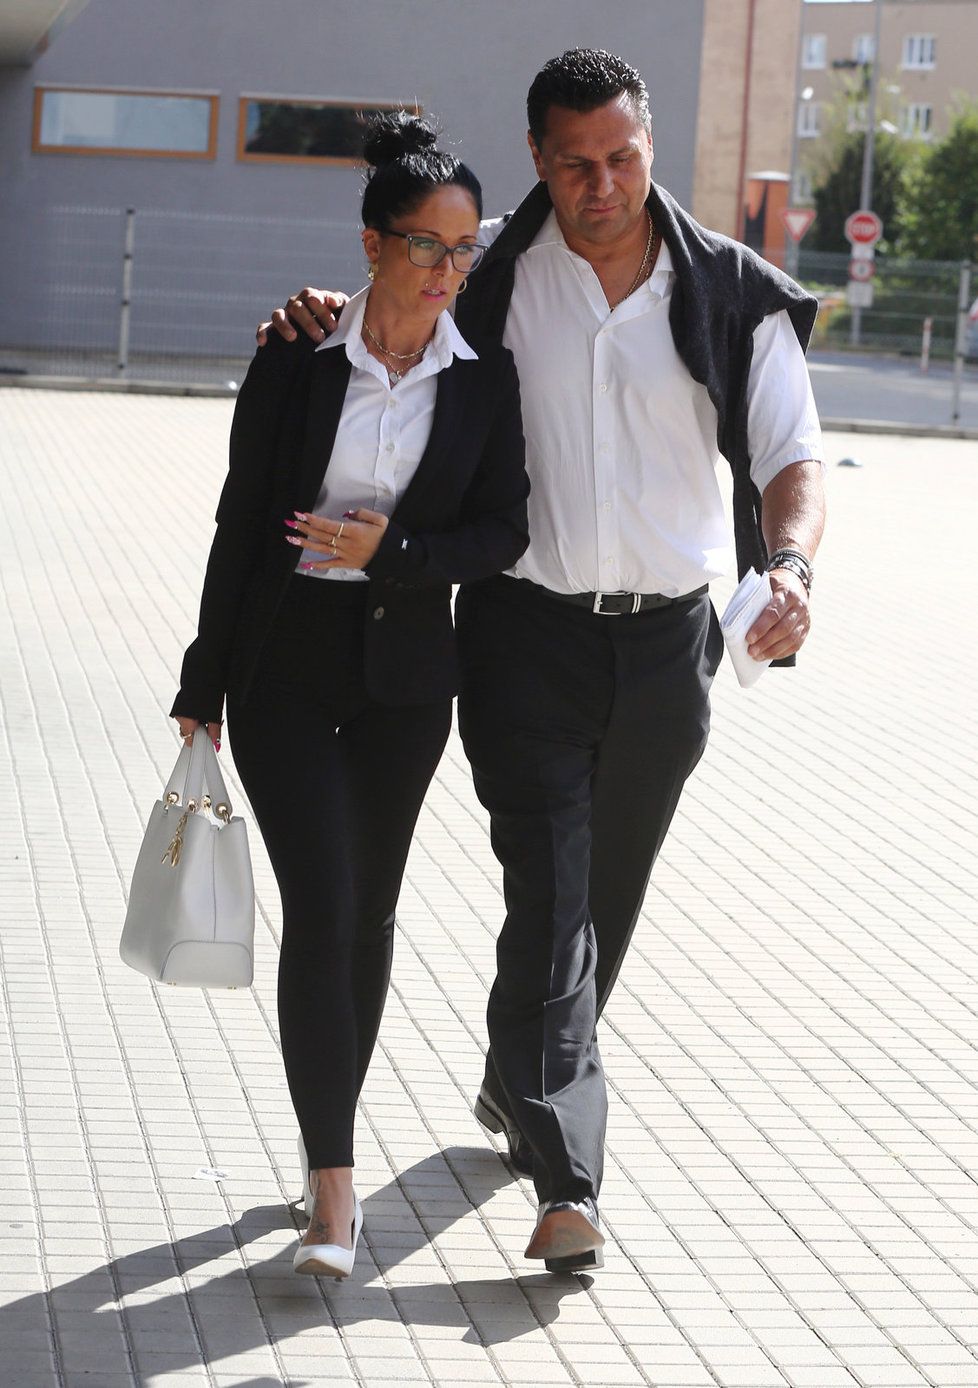 Vladimír Růžička s přítelkyní Marií odchází od soudu.